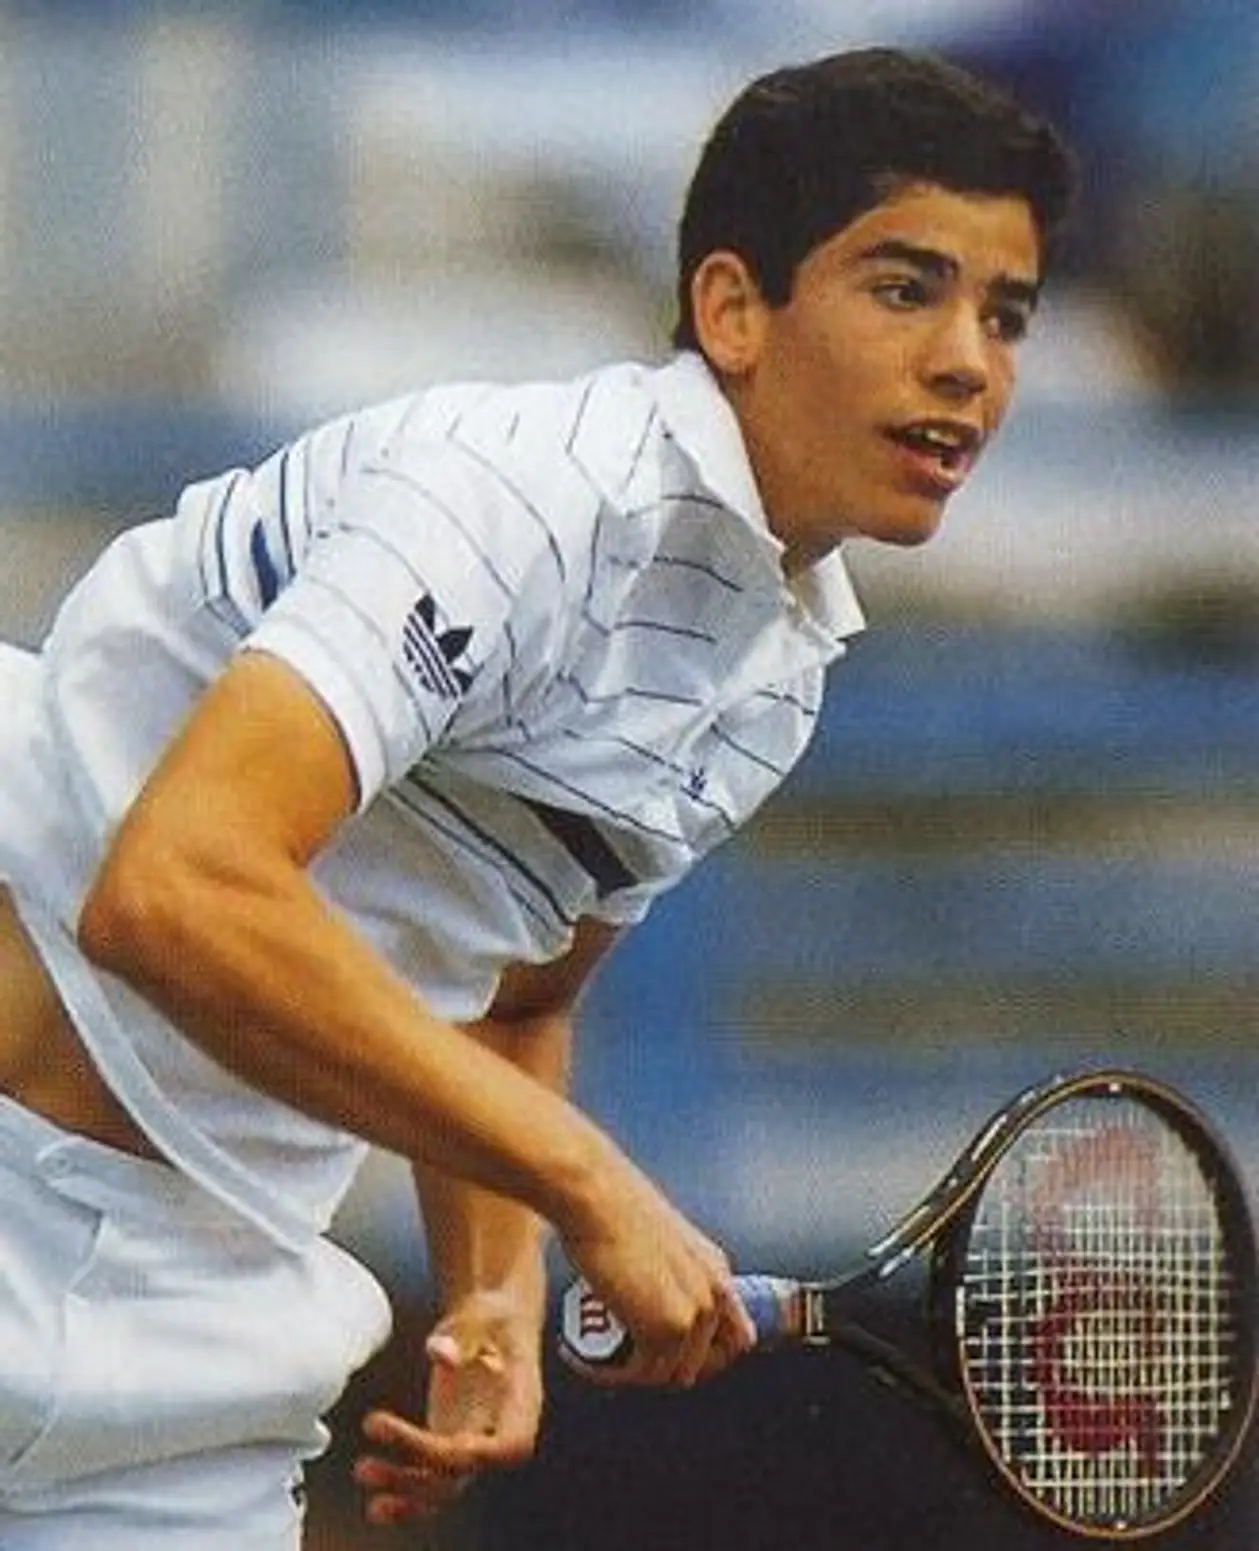 В феврале 1988-го Пит Сампрас начал карьеру. Он был лучшим игроком в истории до Федерера, Надаля и Джоковича